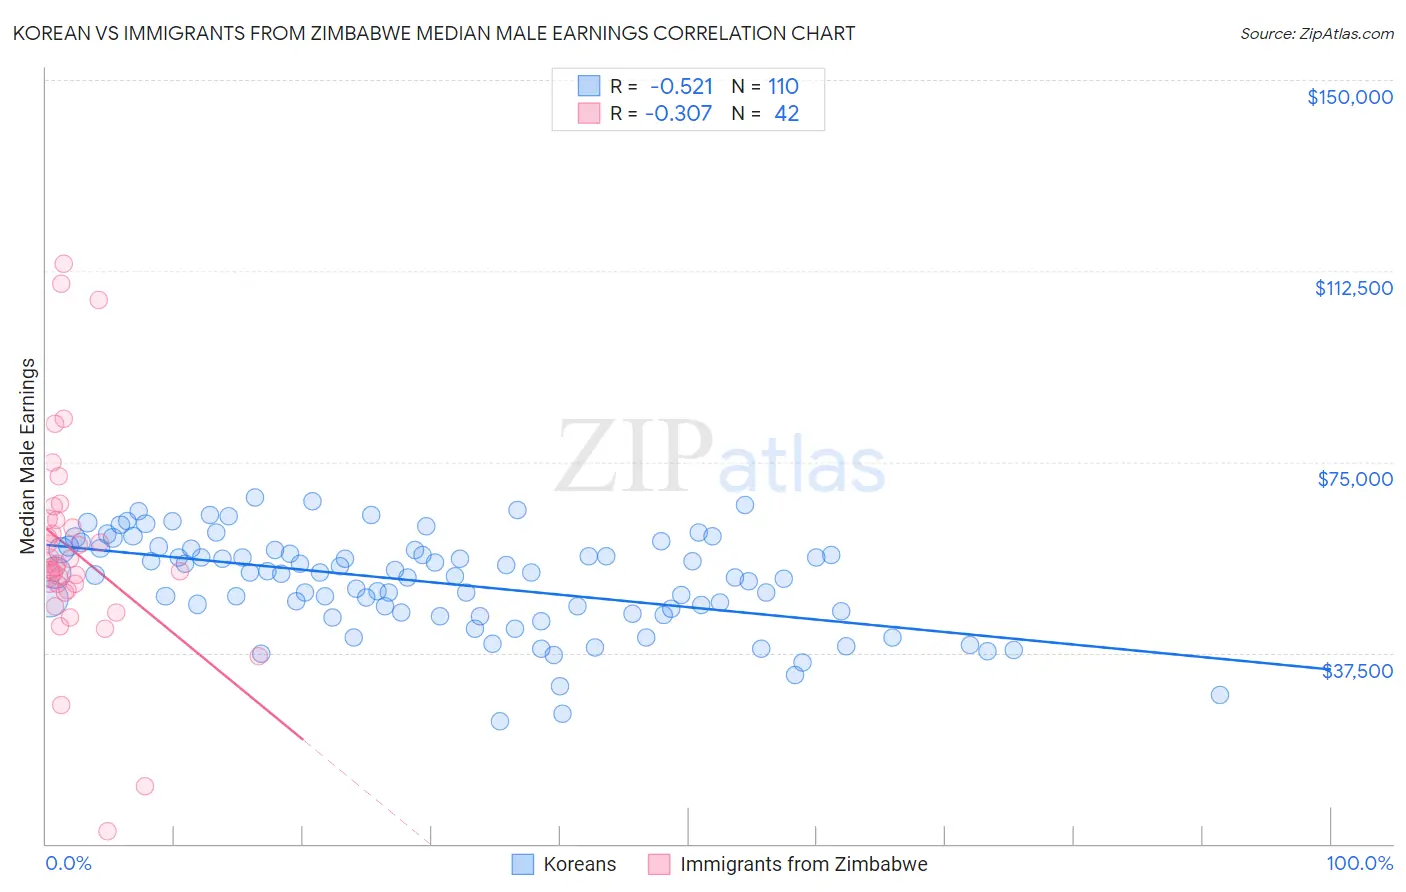 Korean vs Immigrants from Zimbabwe Median Male Earnings